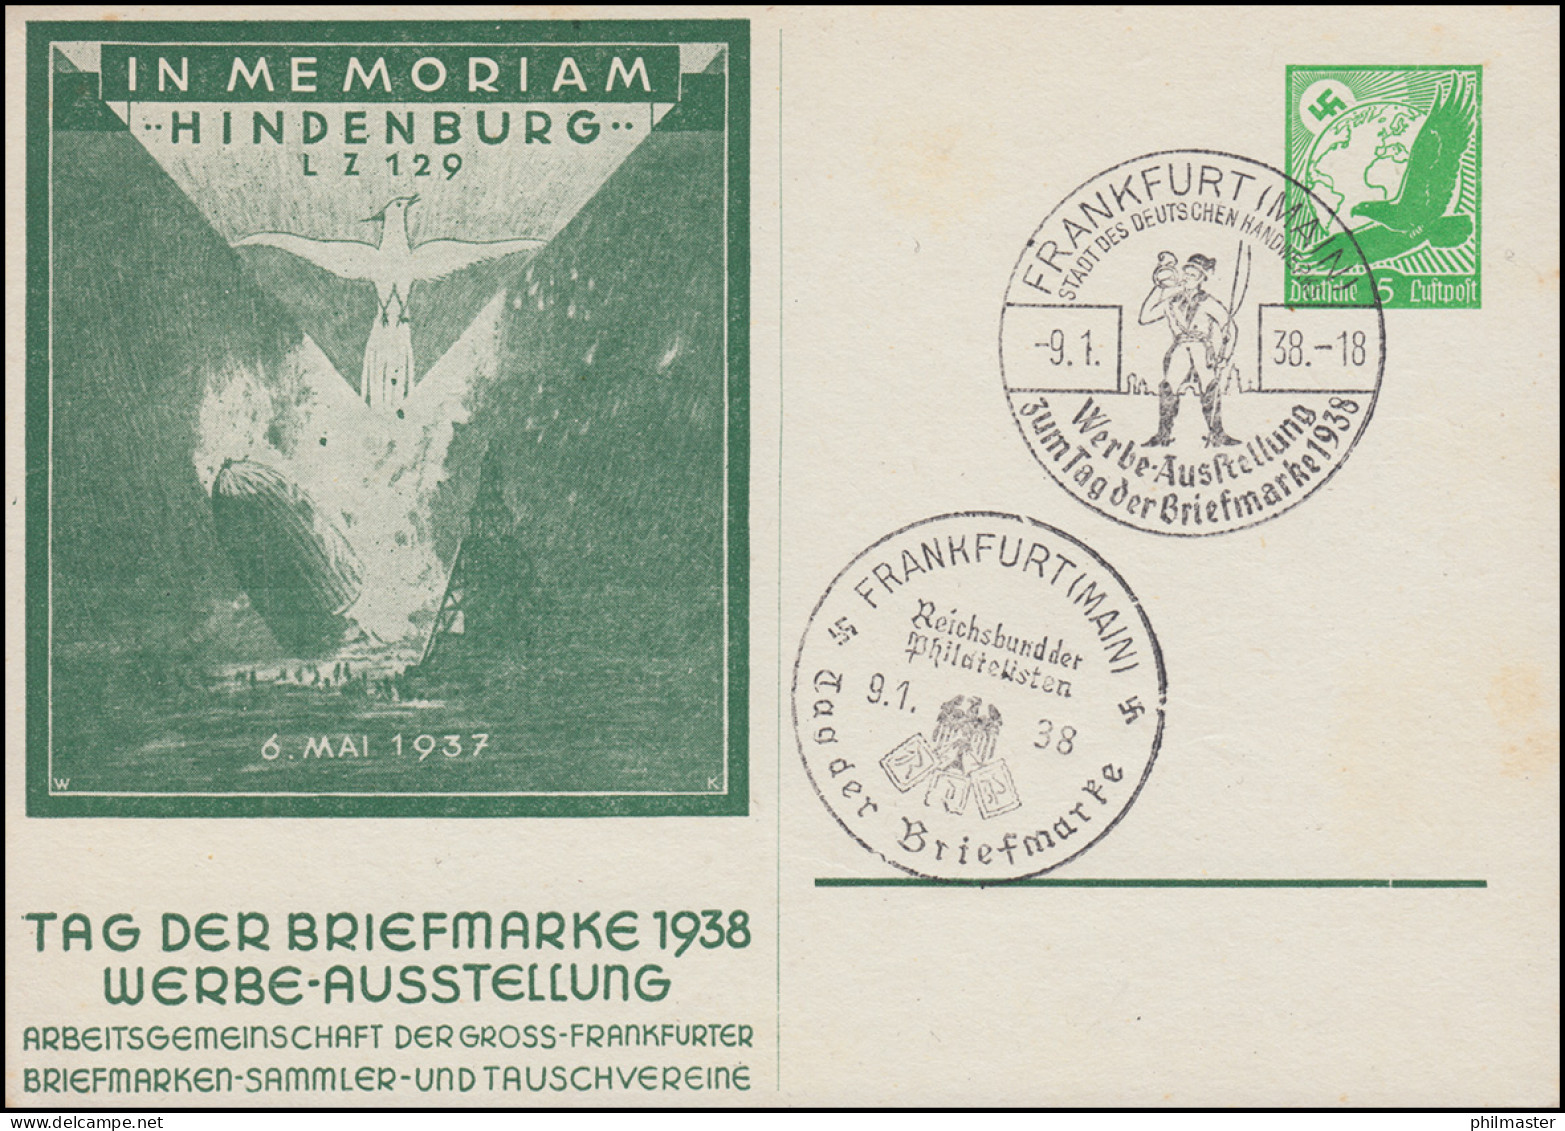 PP 142 Im Memoriam Hindenburg LZ 129 - Tag Der Briefmarke 2 SSt FRANKFURT 9.1.38 - Journée Du Timbre